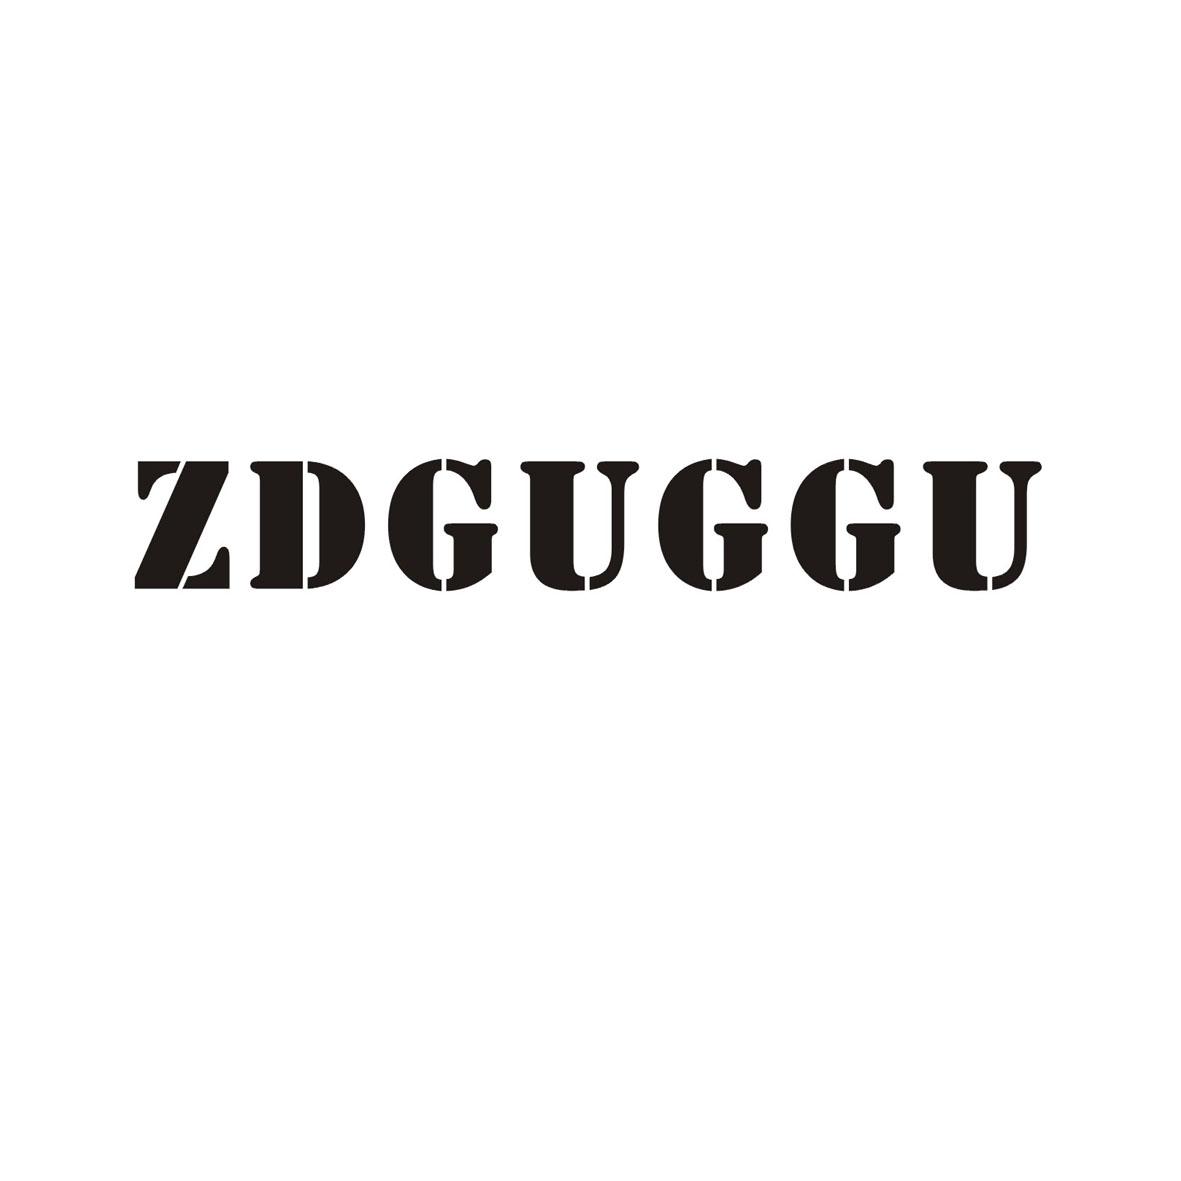 25类-服装鞋帽ZDGUGGU商标转让